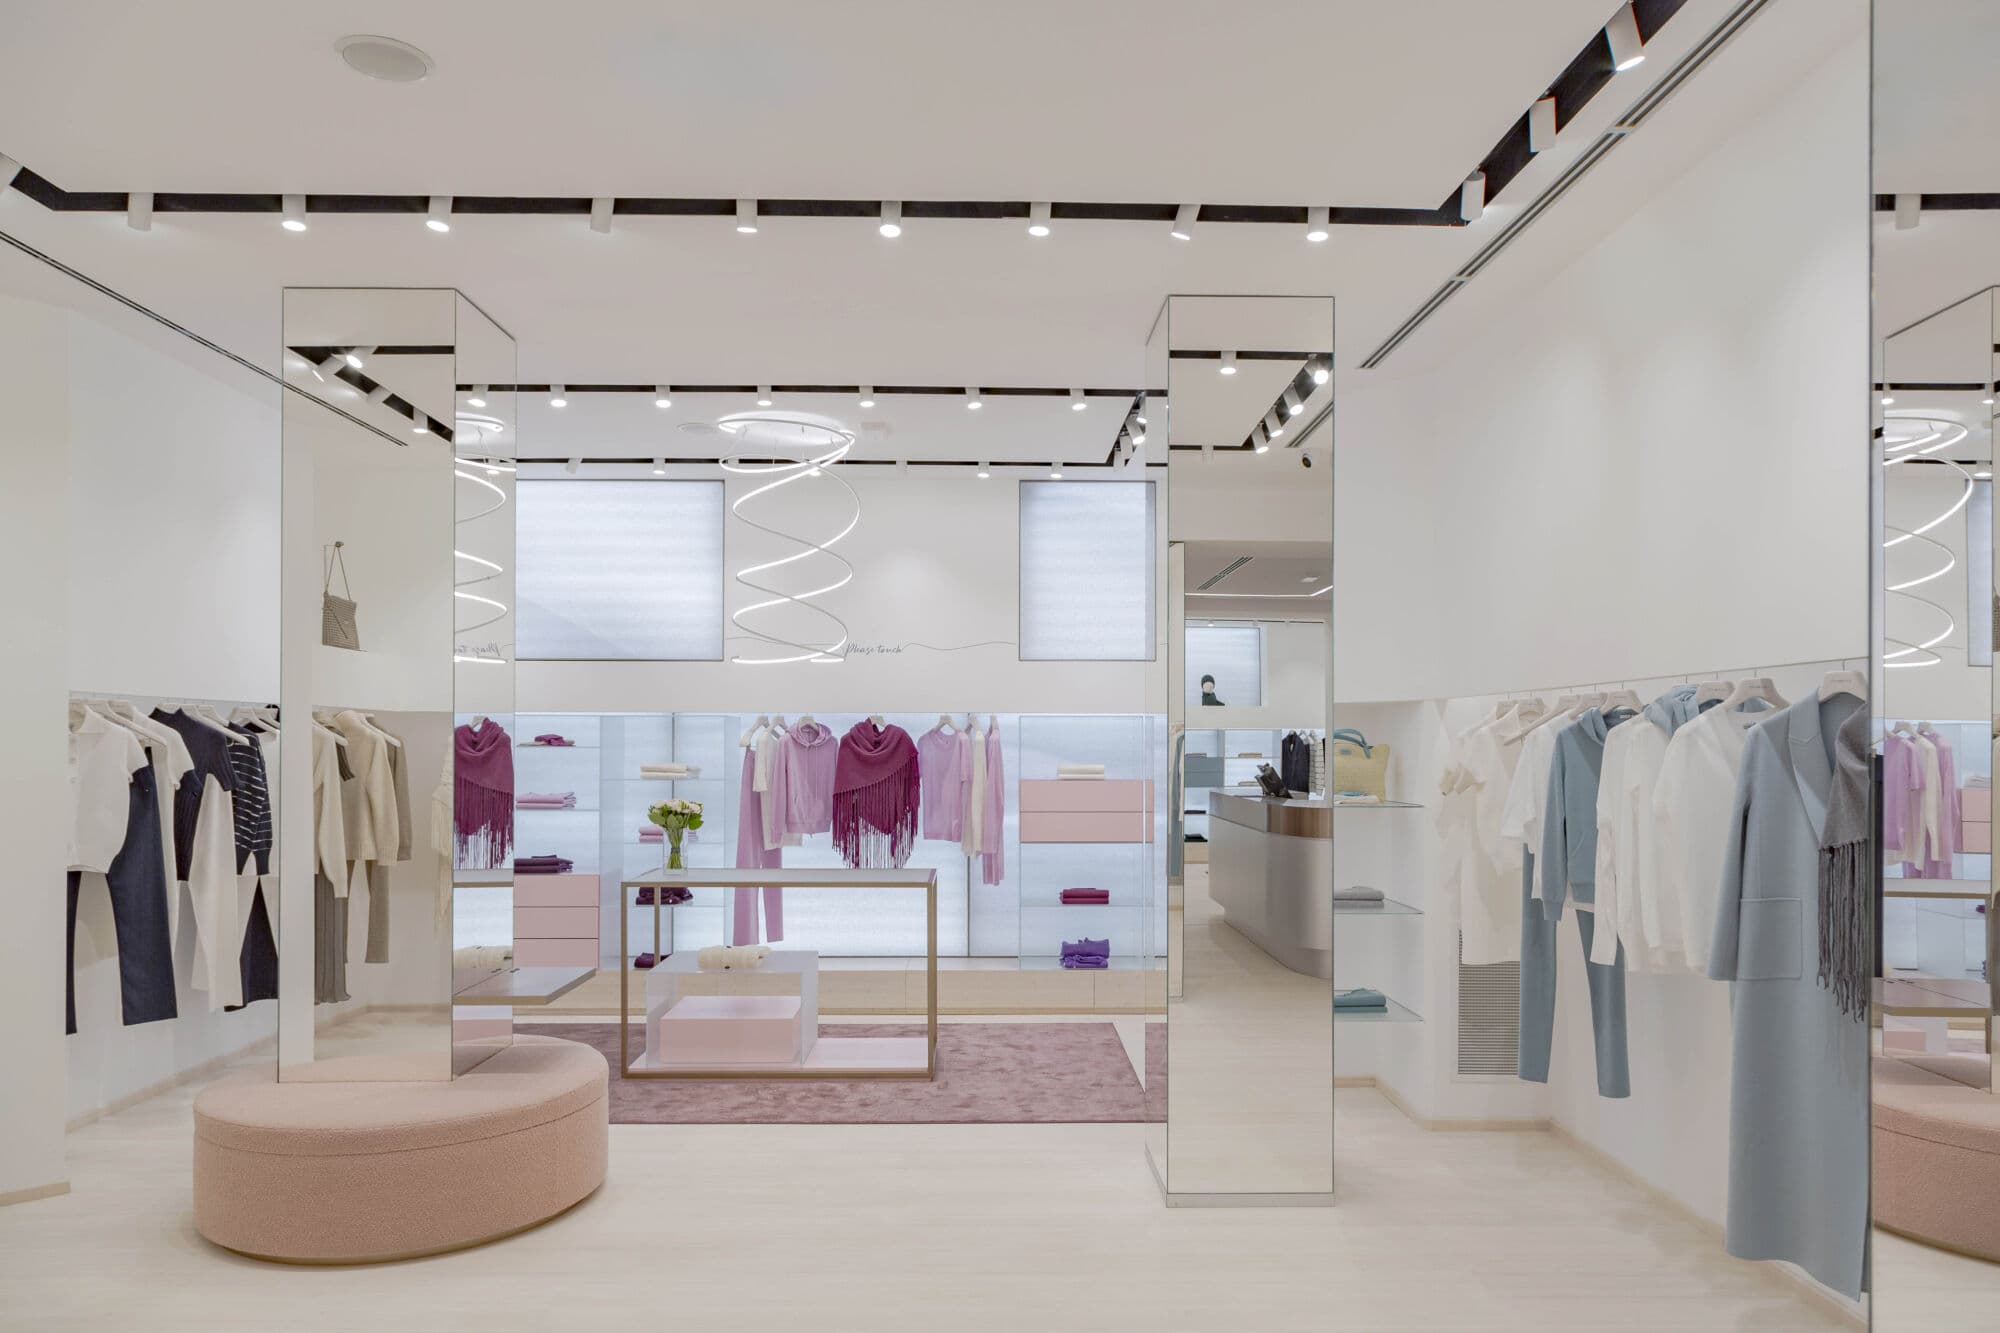 Malo apre ufficialmente la nuova boutique in Via della Spiga 30